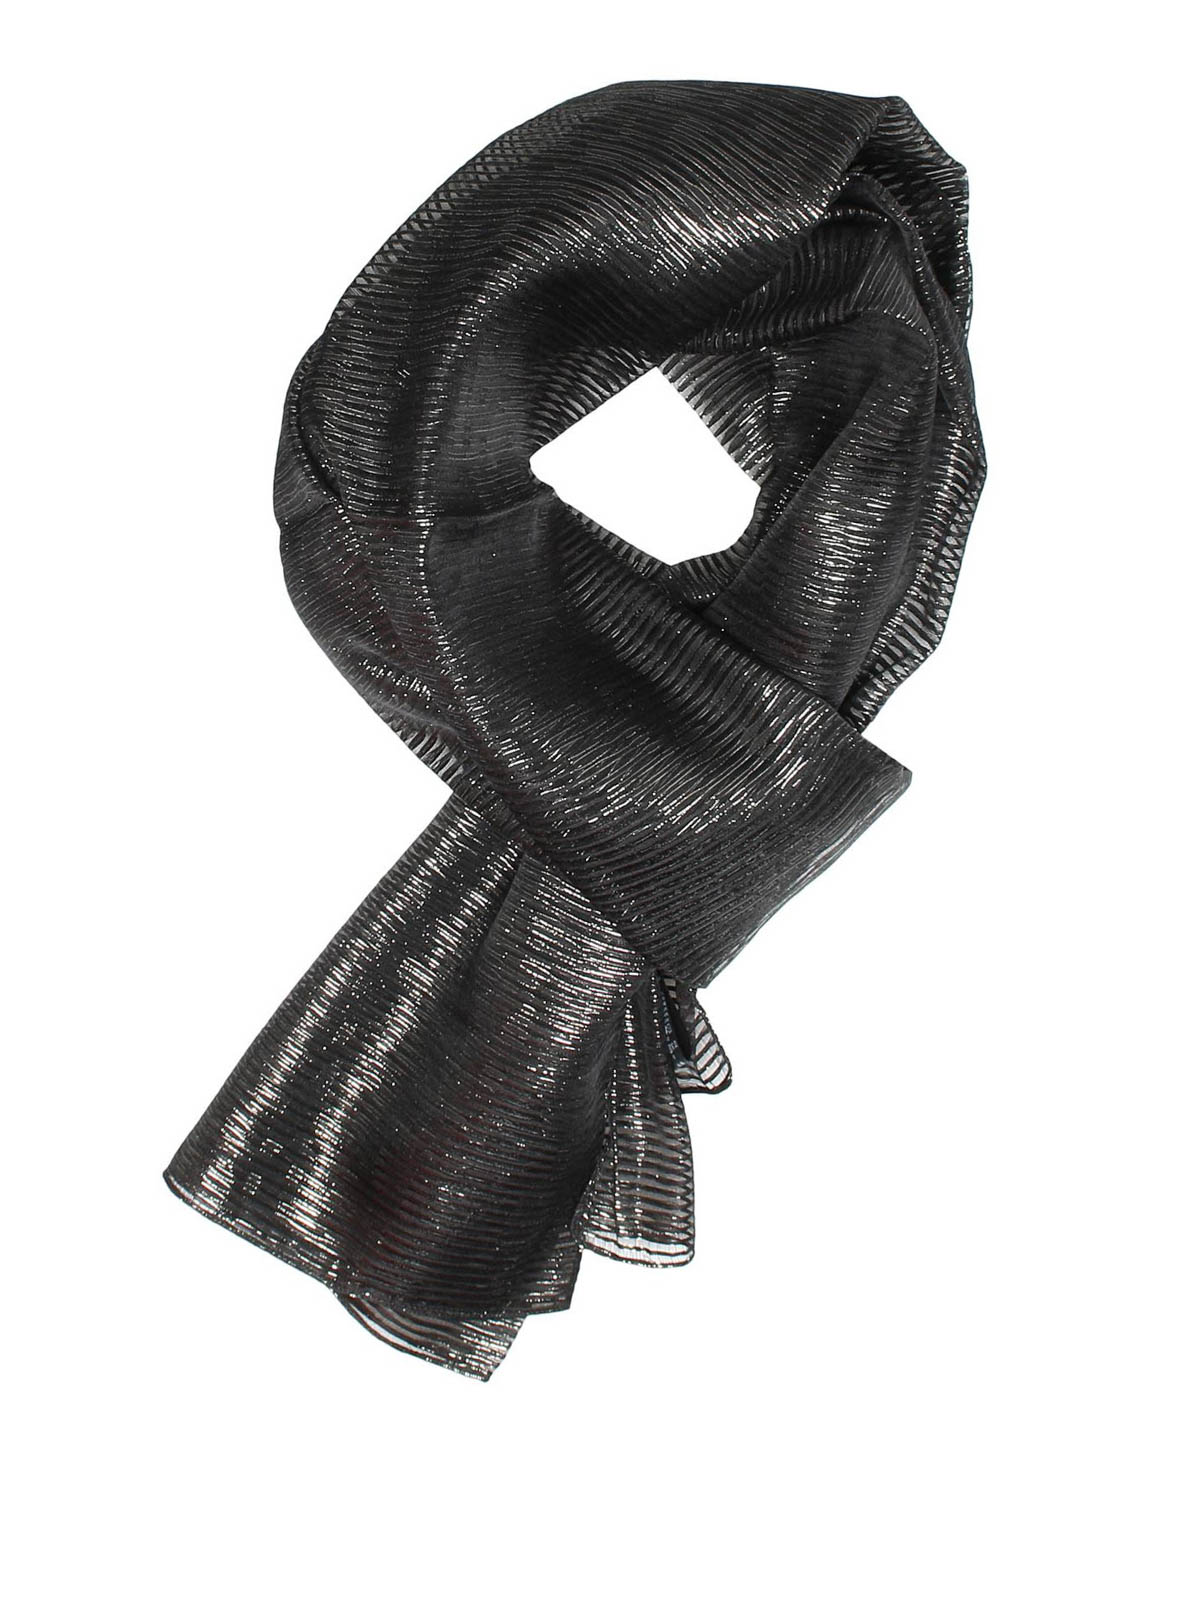 スカーフ Armani Collezioni - ストール/ショール - 黒 - 6952566A71000020